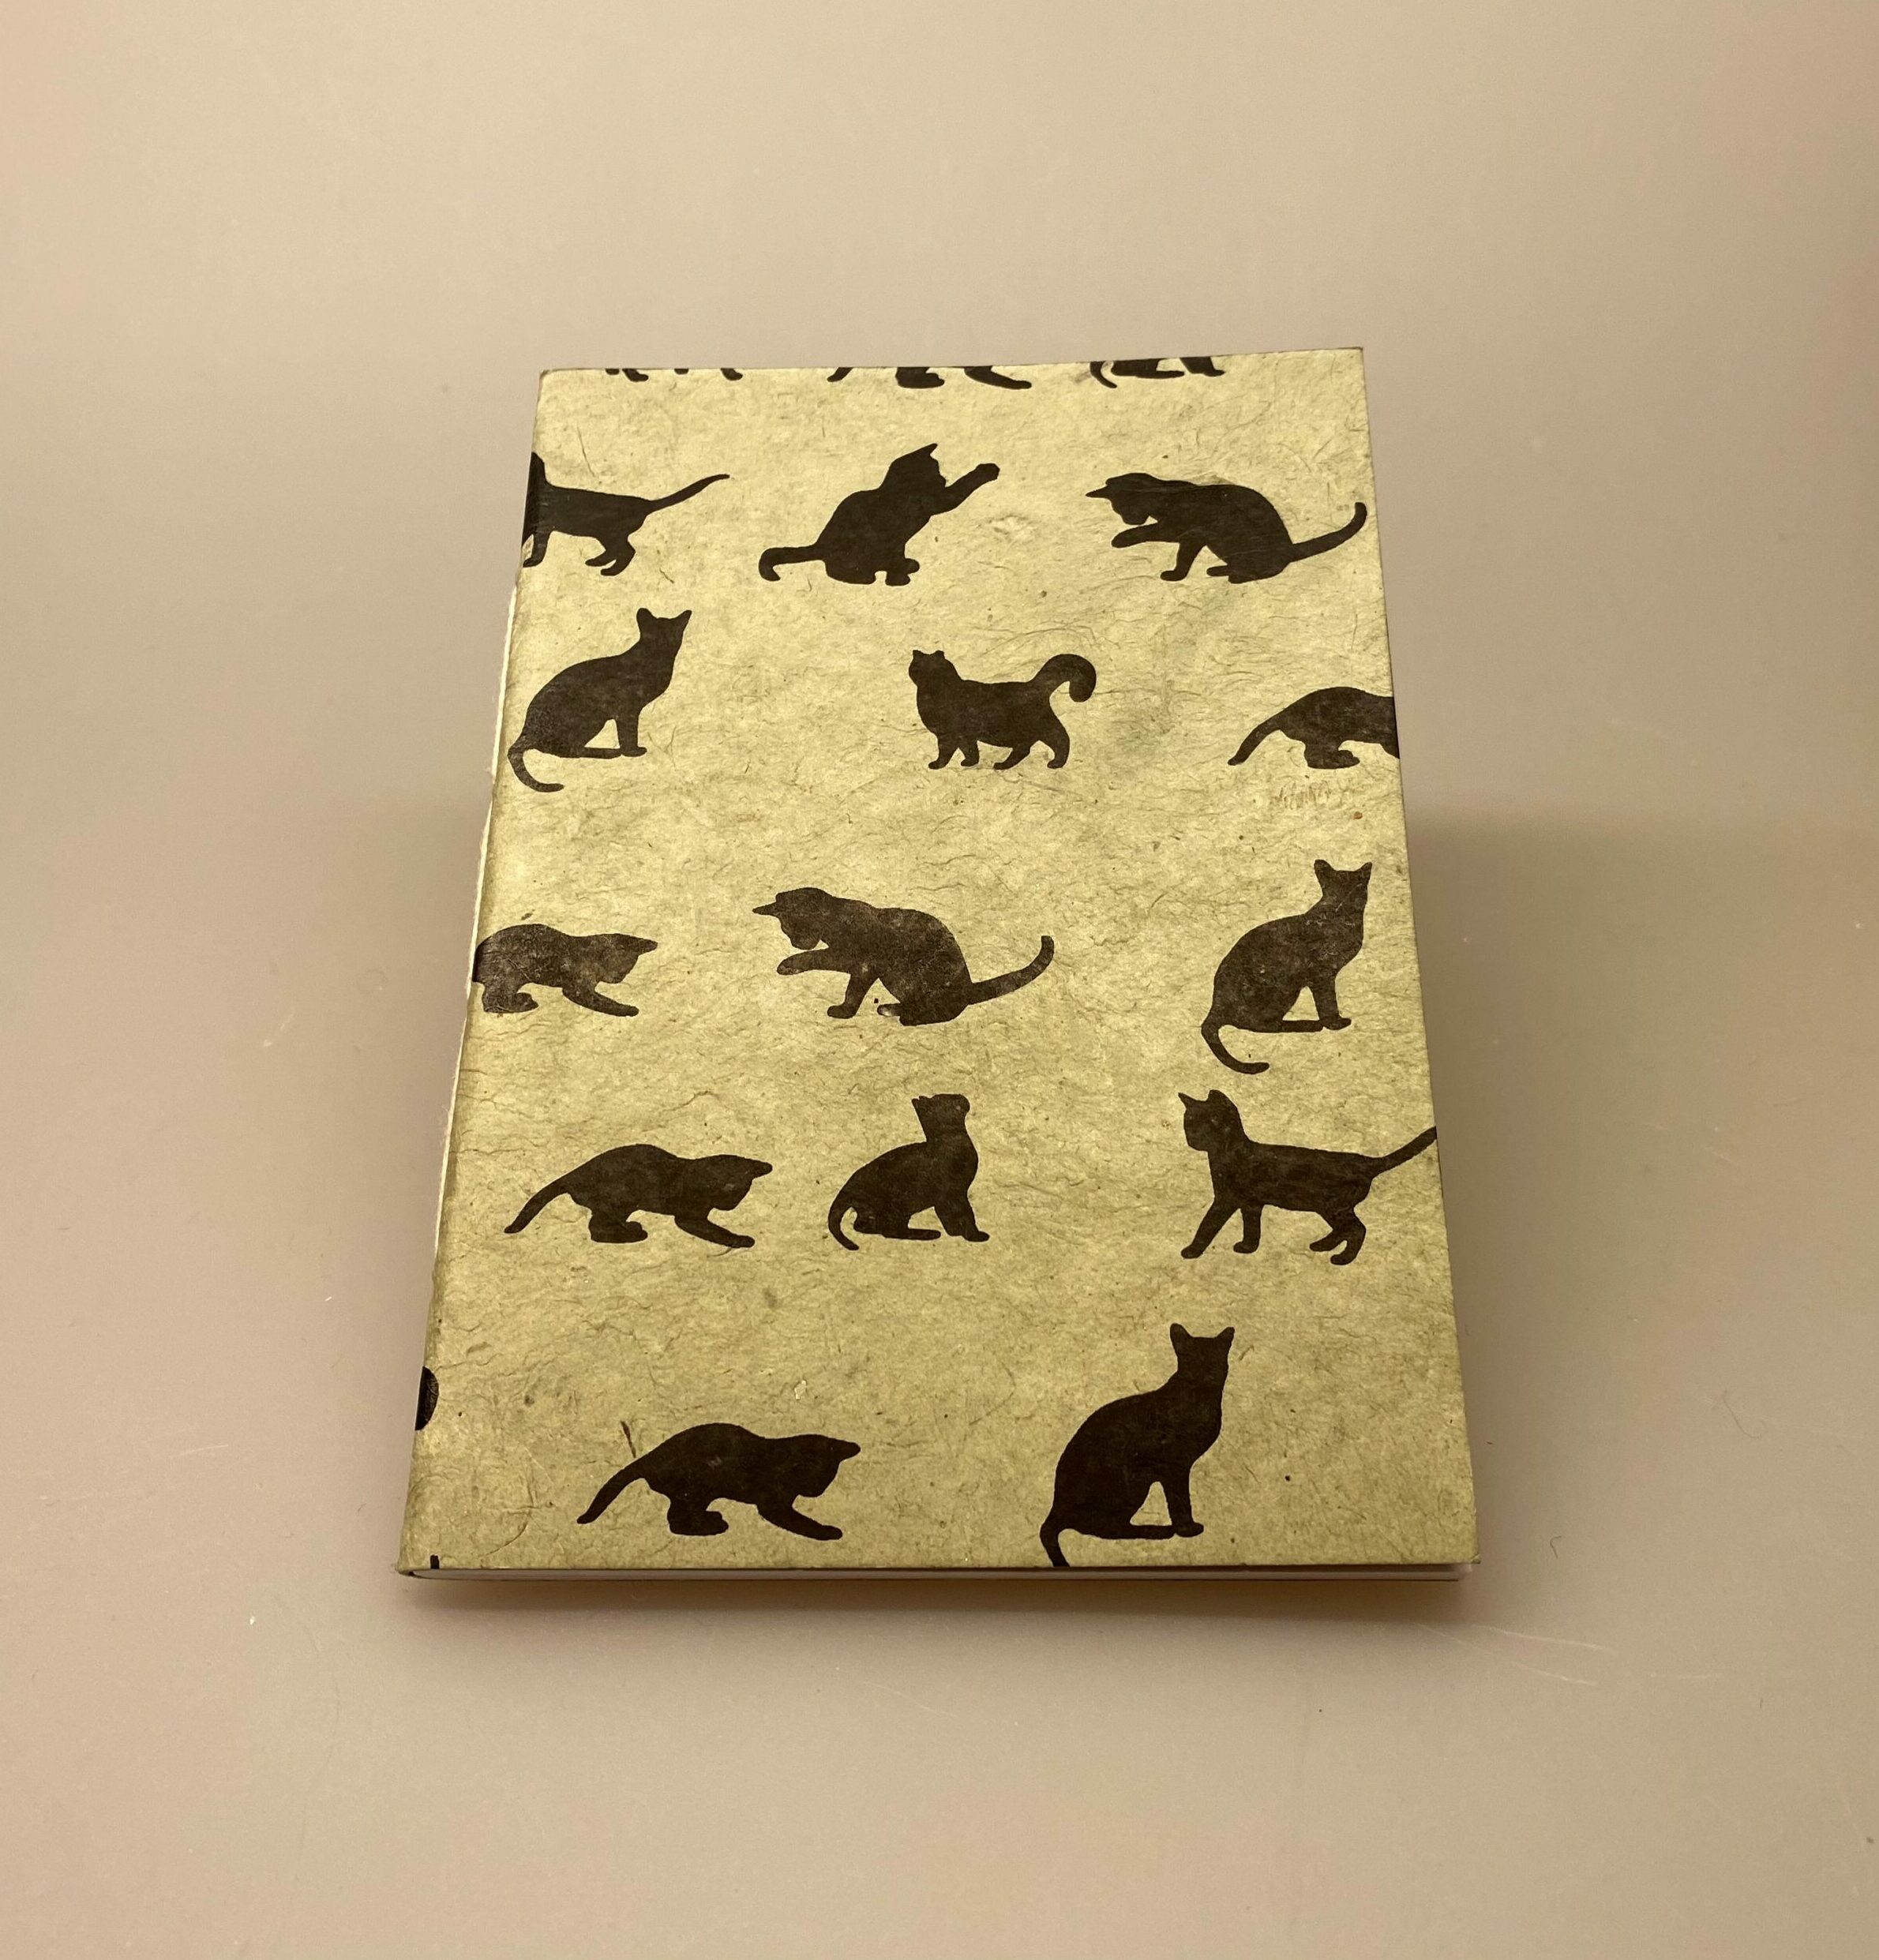 A6 Hæfte håndlavet papir - Khaki med sorte katte A5 Hæfte håndlavet papir - Khaki med sorte katte, katte, katteting, ting med katte, cats, catlover, katteejer, gave, gaveidé, hæfte, notesbog, journal, håndlavet, papir, nepal, håndtrykt, kattefigur, kattefigurer, kattemotiv, katte mønster, ribe, biti, kattebog, katteblok, kattehæfte